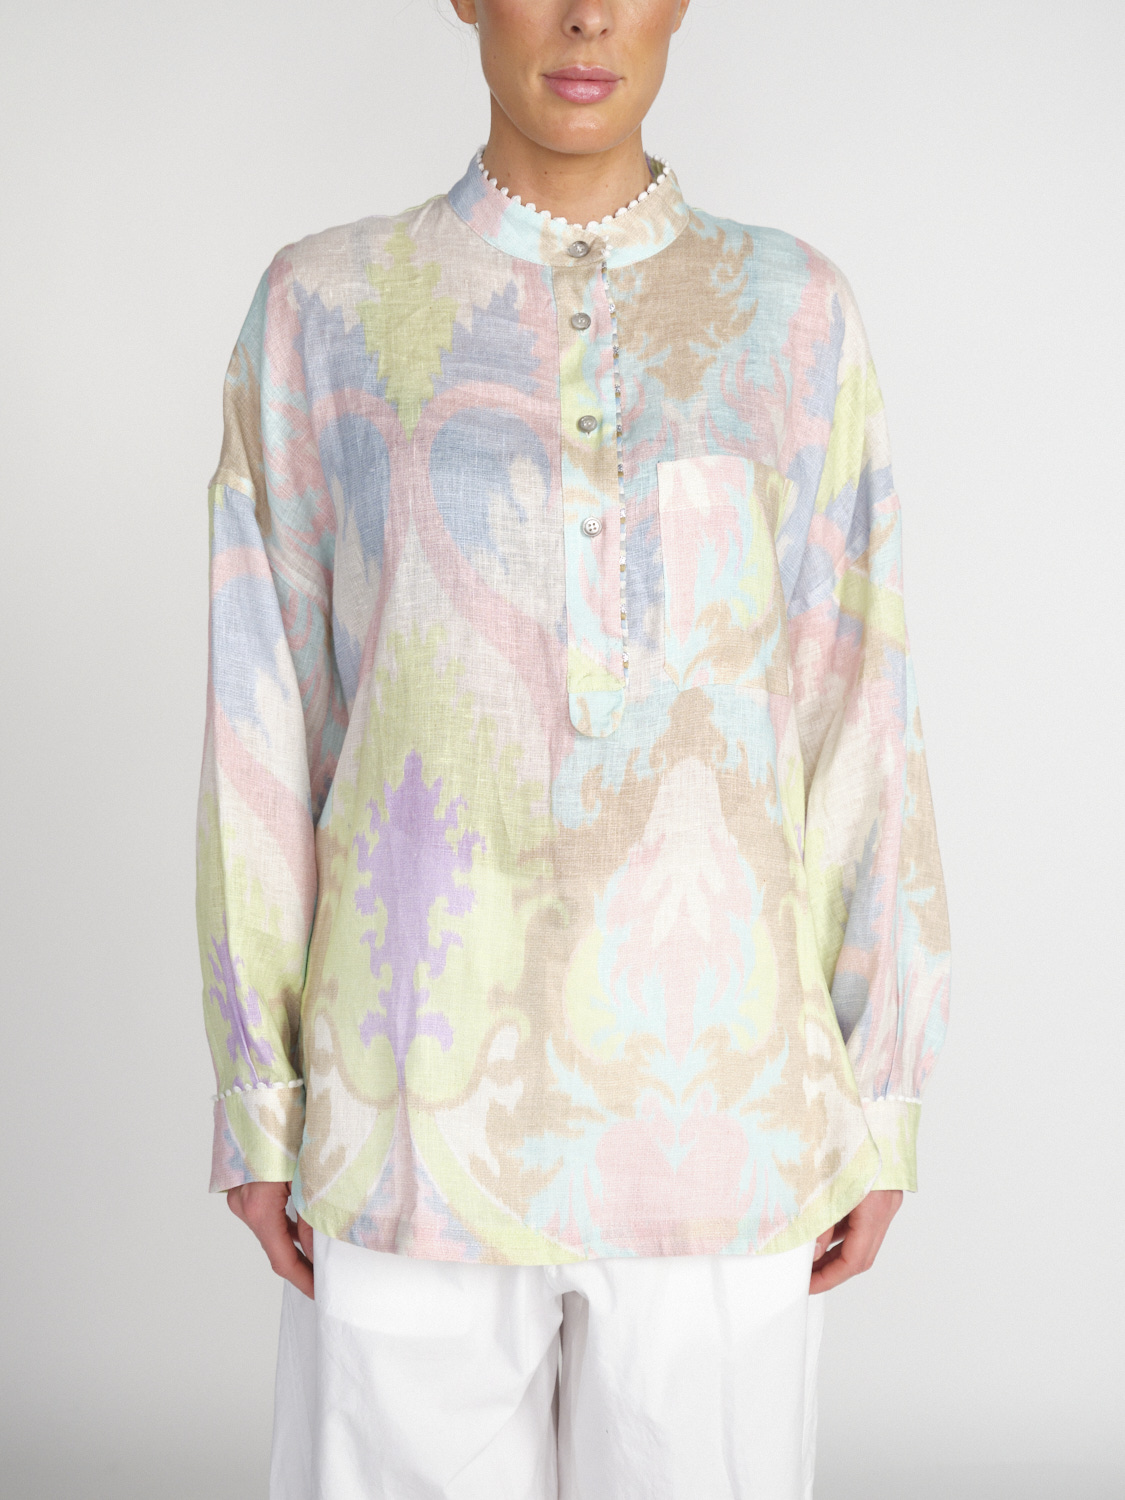 Bazar Deluxe Lange Leinen-Bluse mit pastellfarbigem Muster   mehrfarbig 34